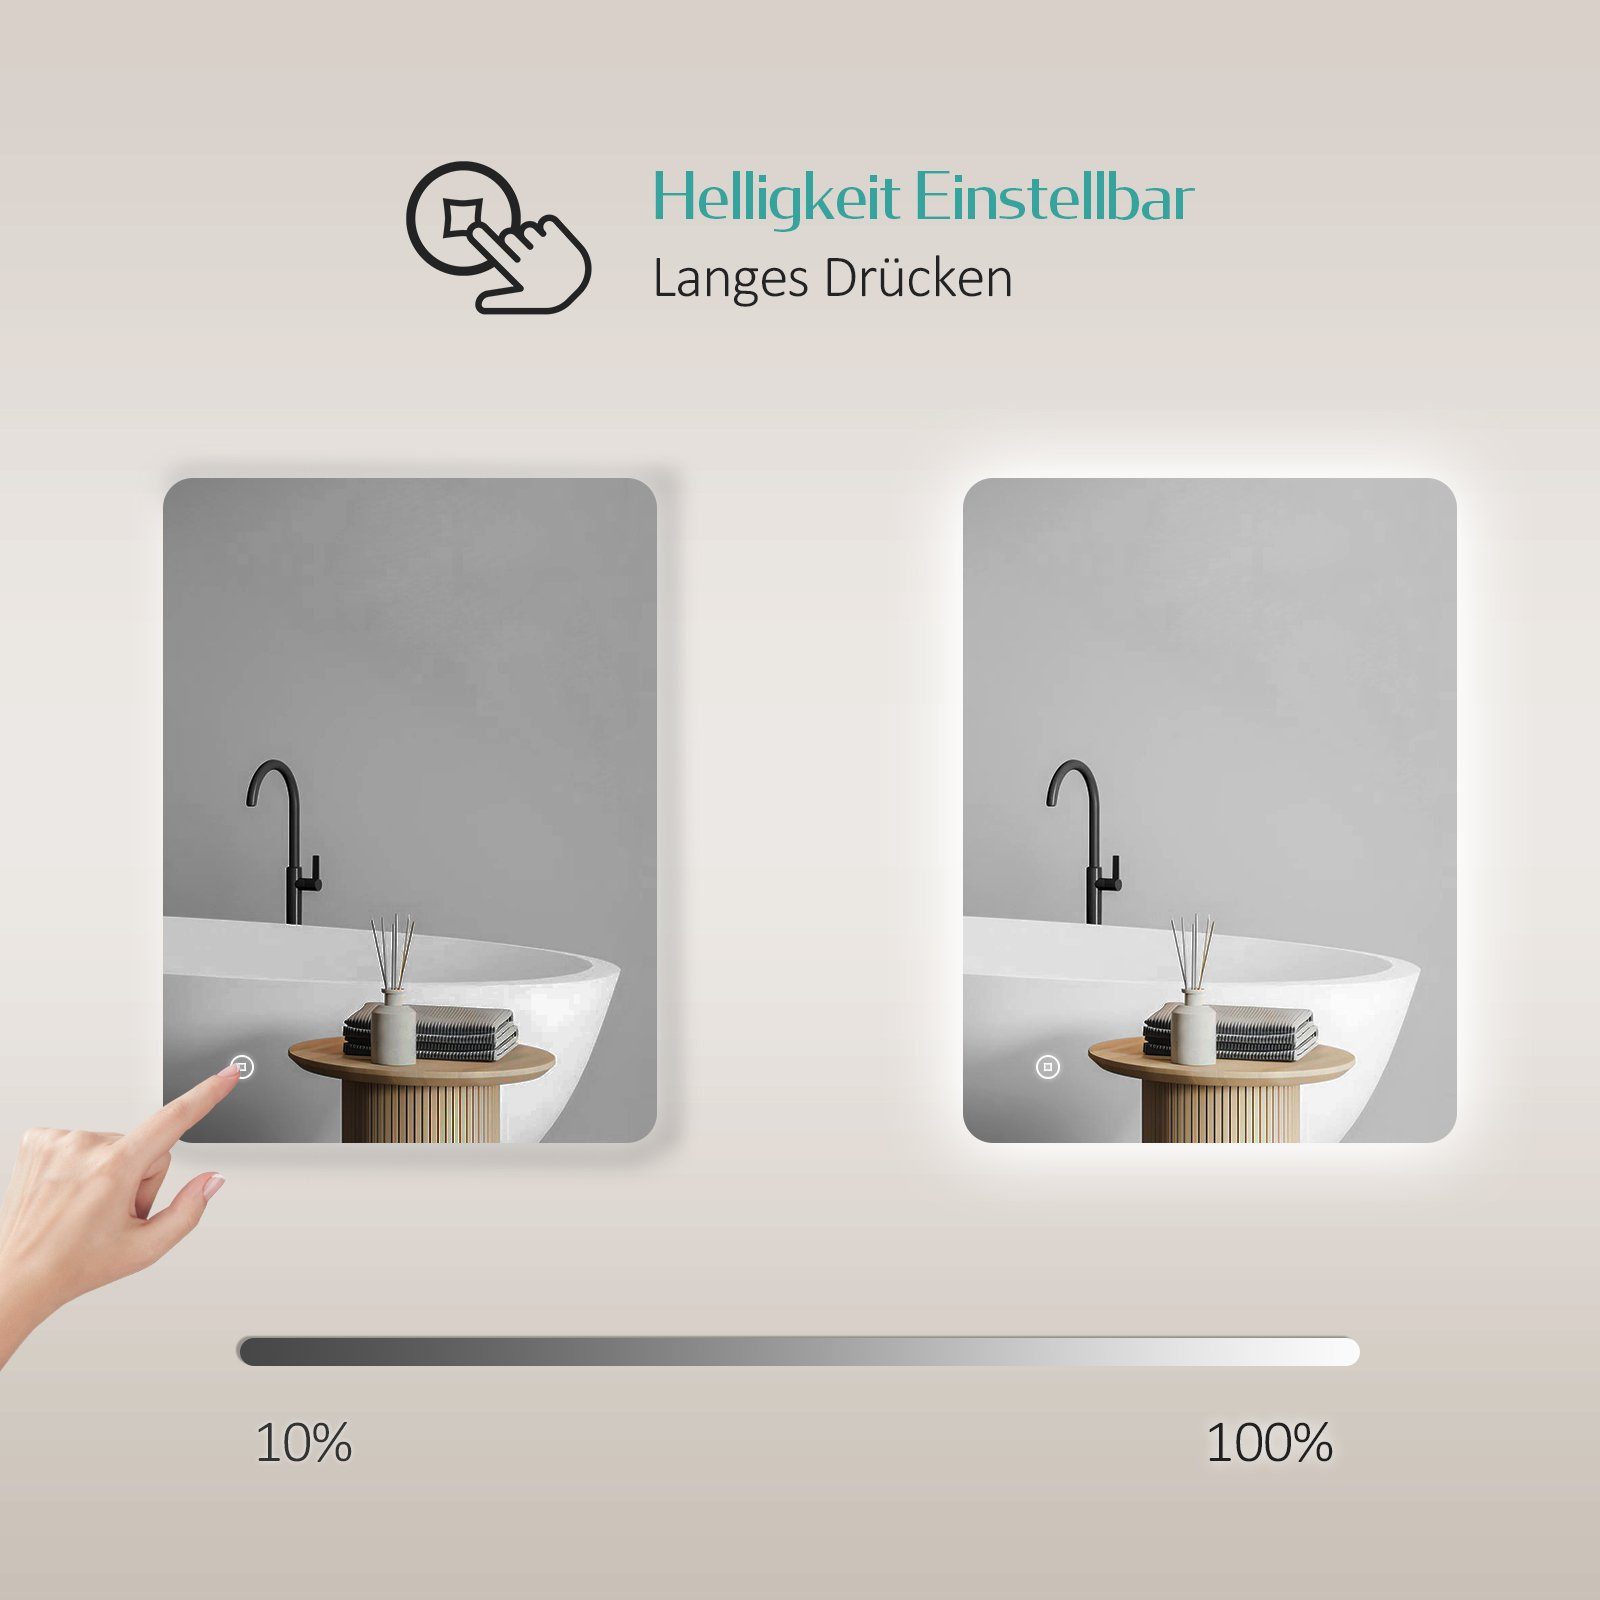 EMKE Wandspiegel EMKE Badspiegel Touch-Schalter mit und Beleuchtung LED Badspiegel Rahmenloser Badezimmerspiegel, Antibeschlag mit